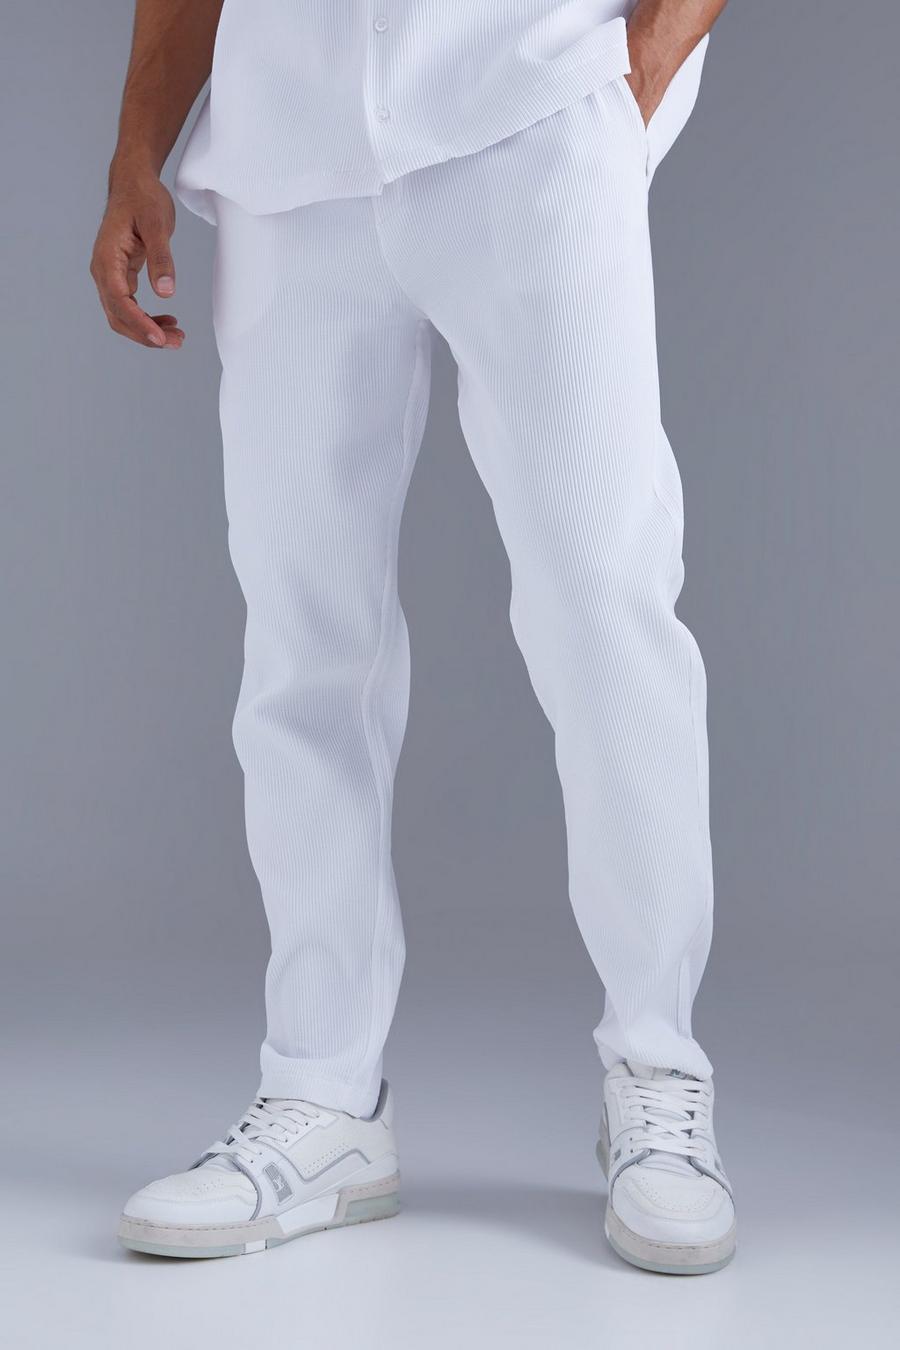 Pantalón ajustado plisado, White